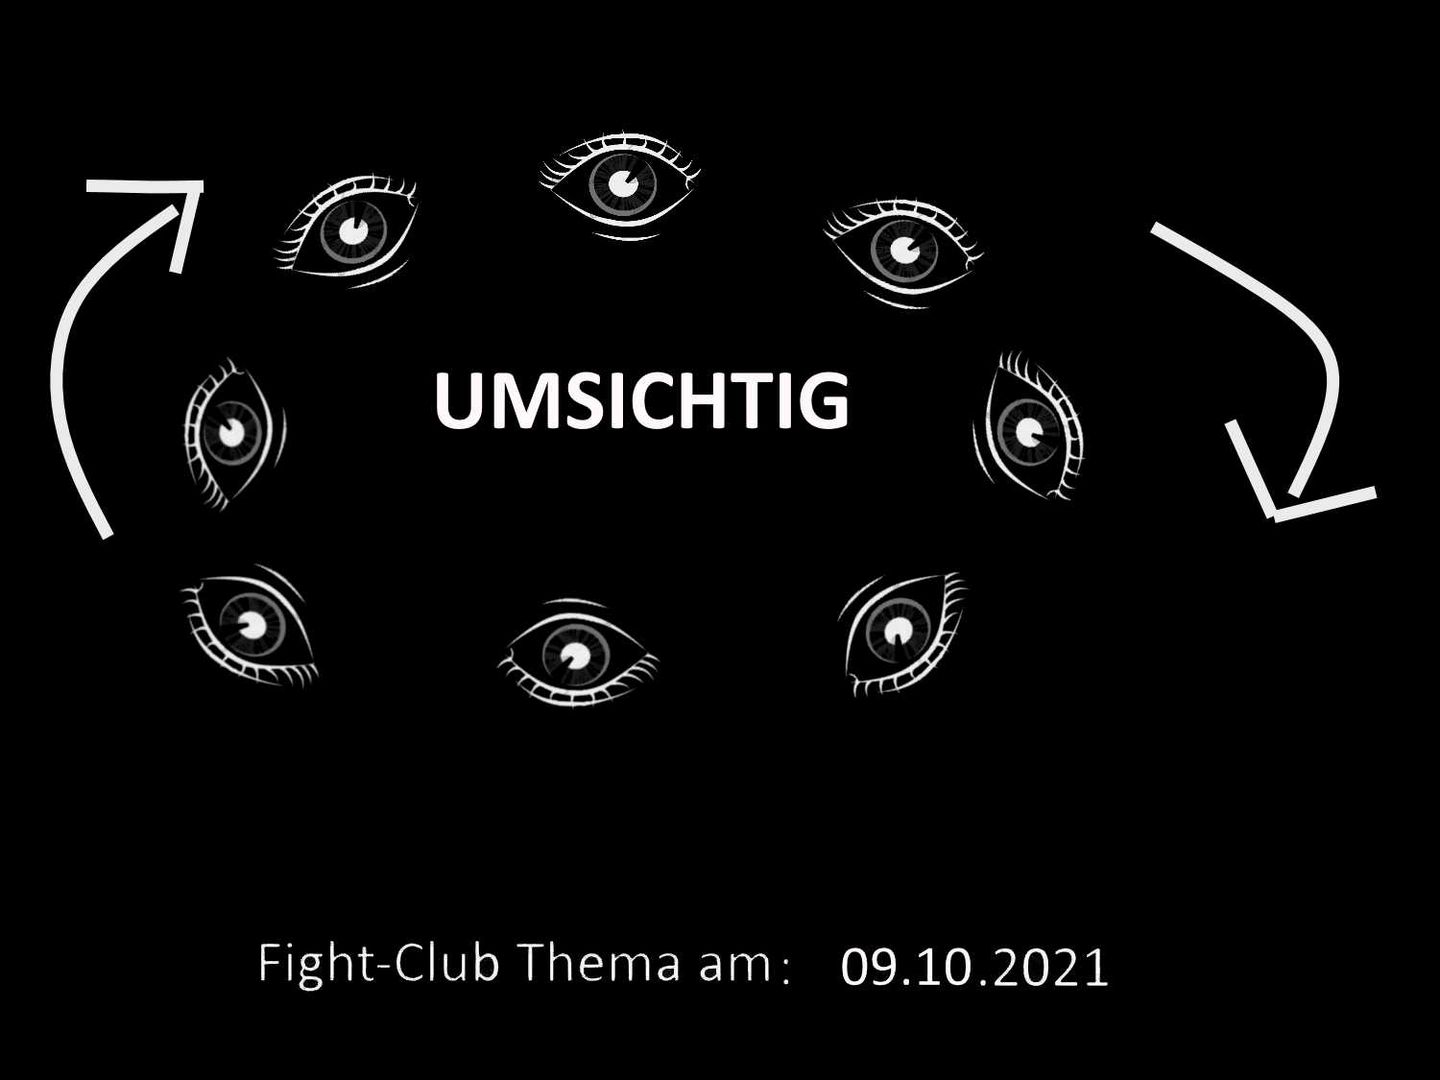 Umsichtig: Fight-Club am 09.10.2021